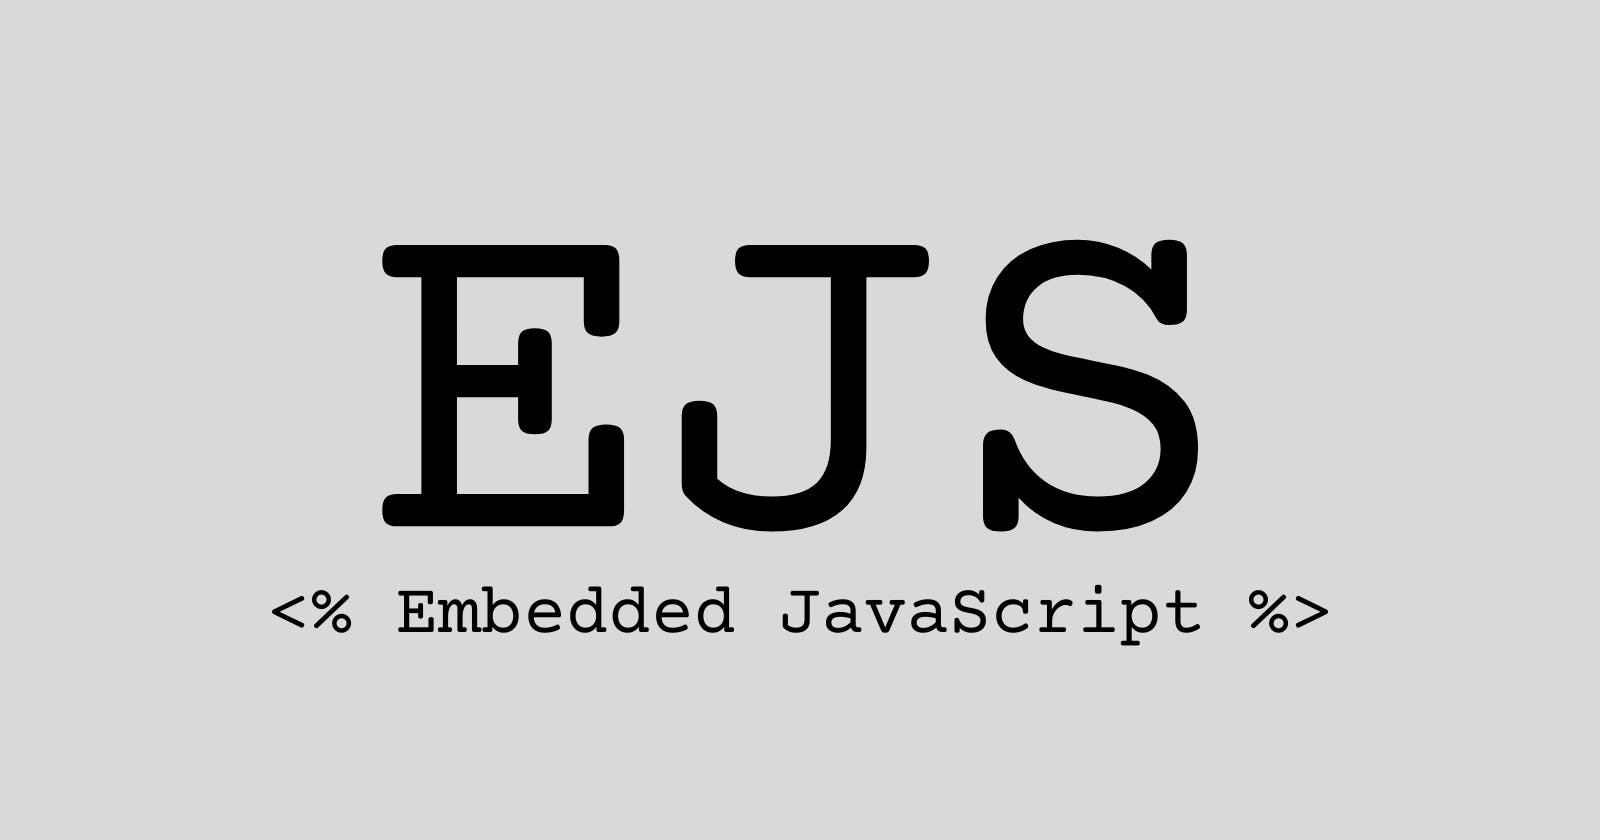 Embedded JavaScript